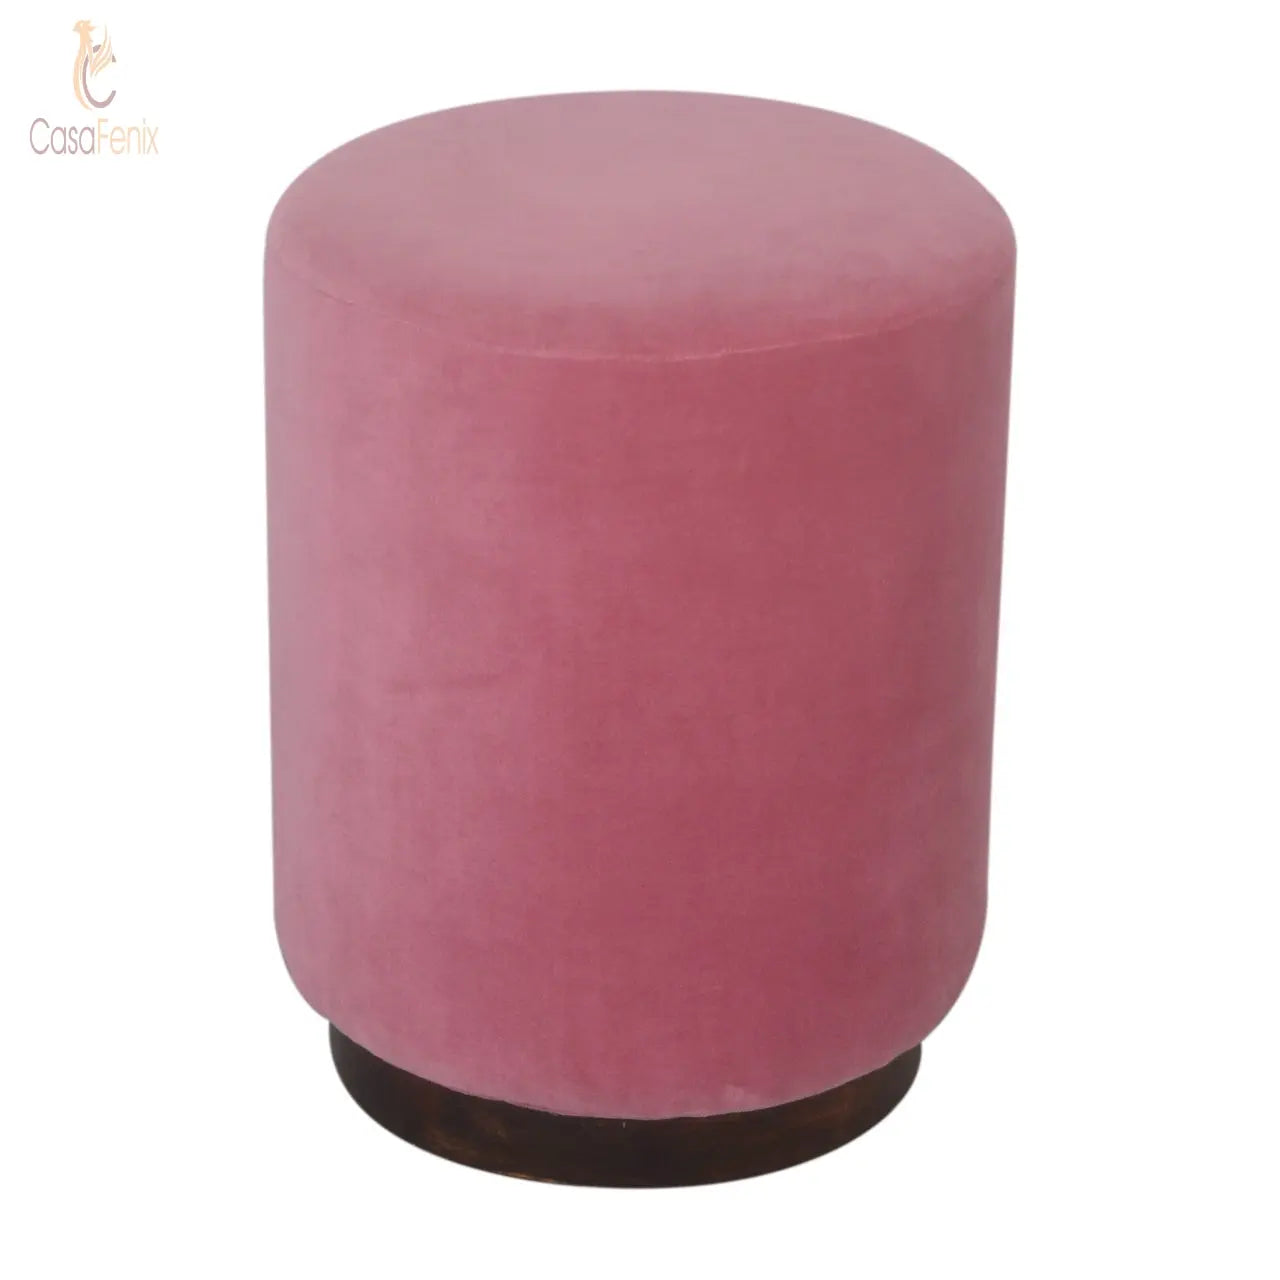 Pink Velvet Upholstered Footstool with Wooden Base - CasaFenix